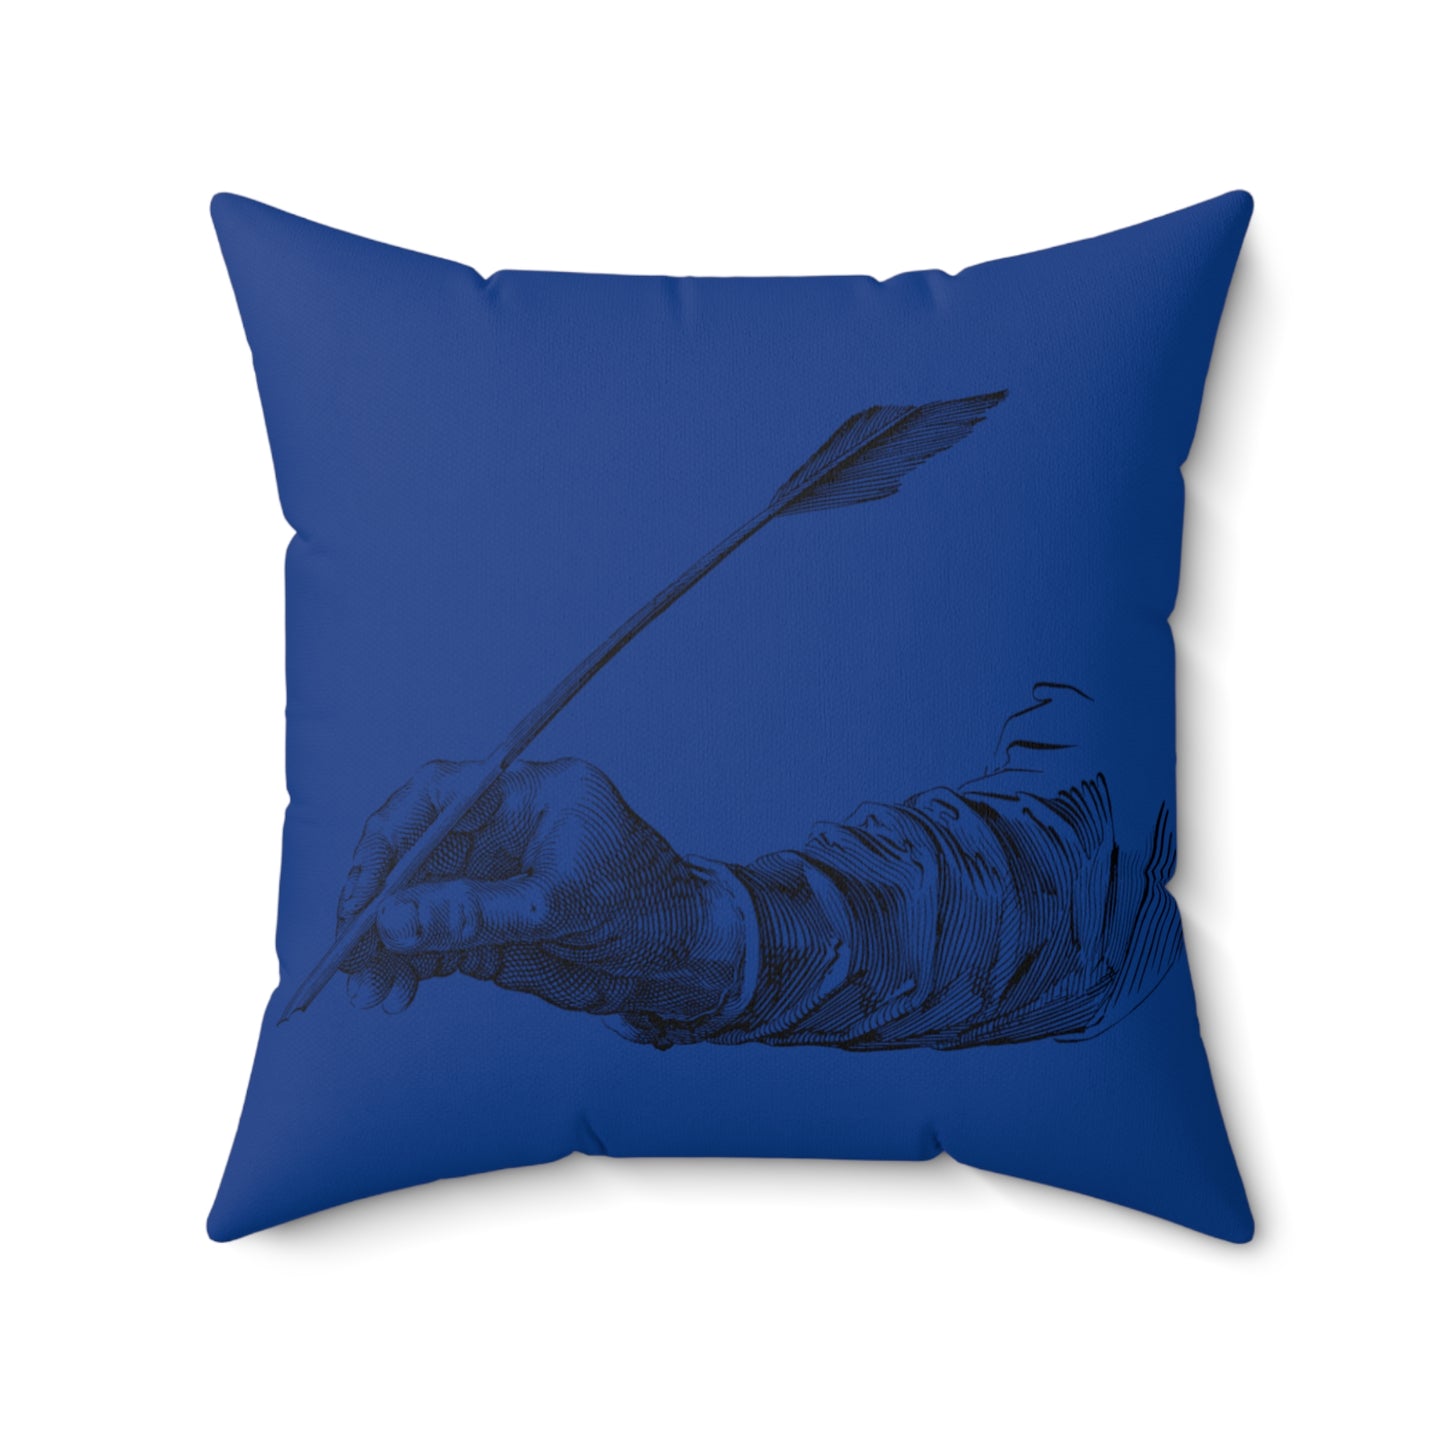 Spun Polyester Square Pillow: Writing Dark Blue